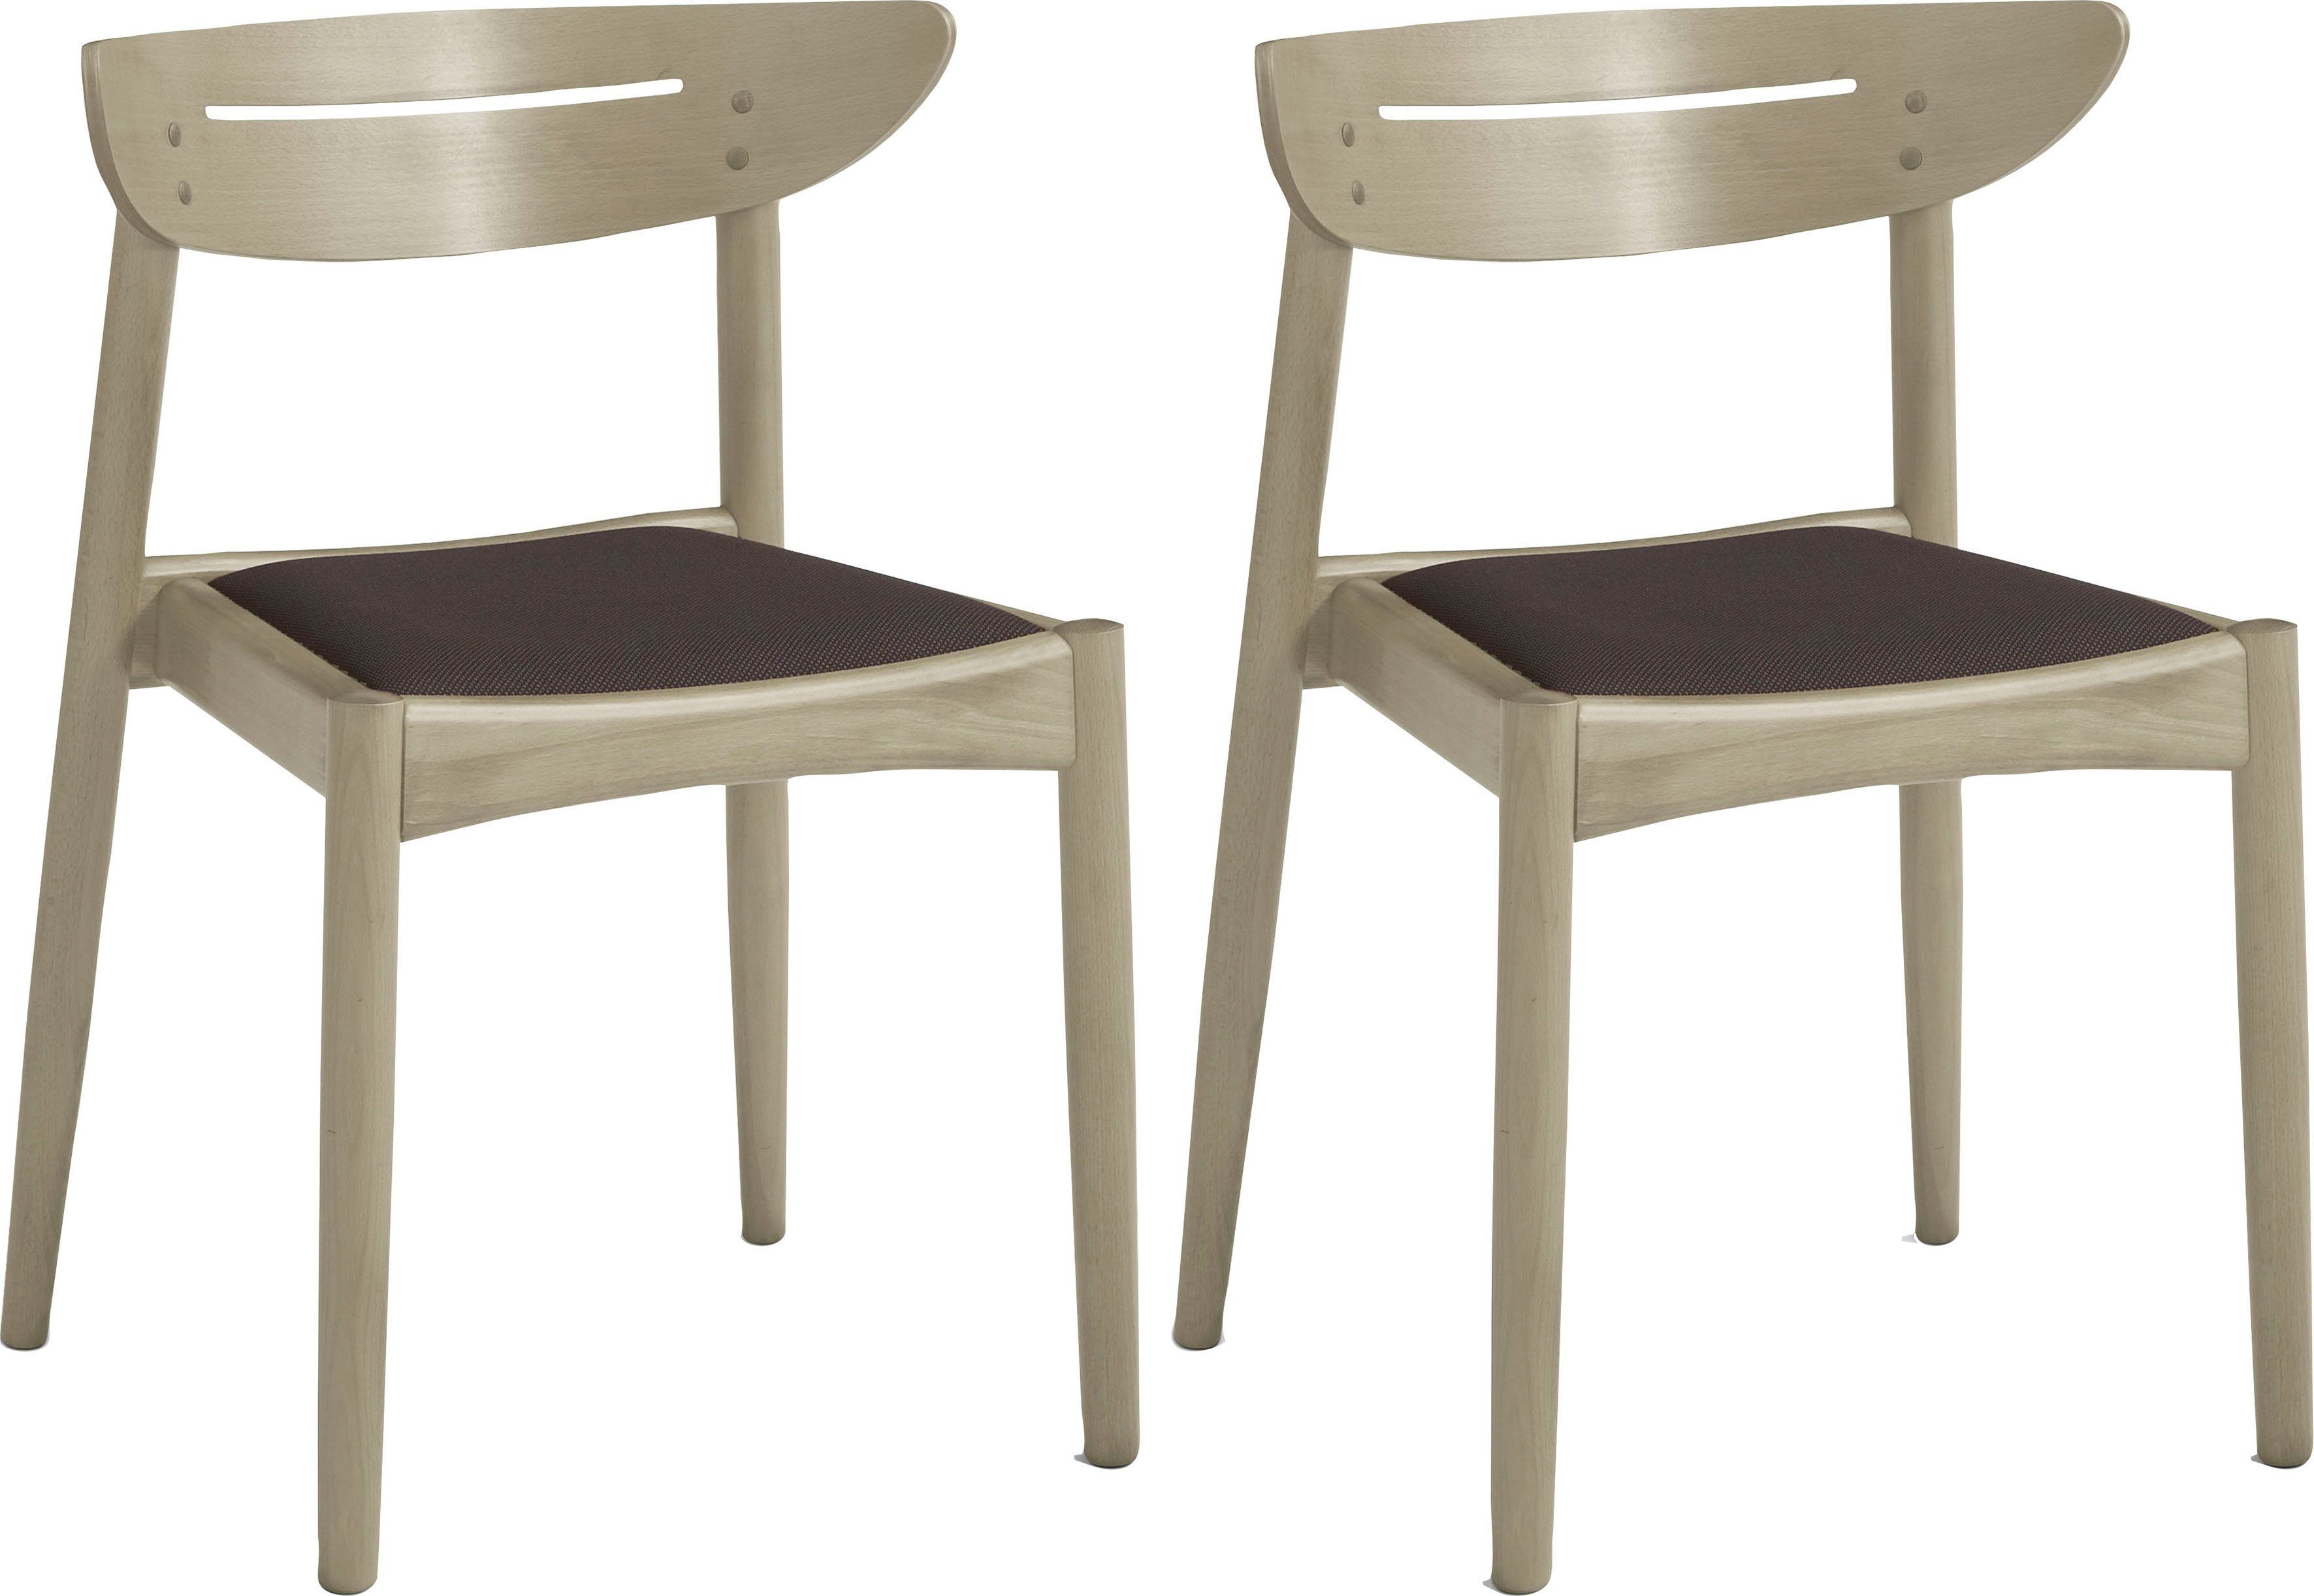 Hammel Furniture Esszimmerstuhl Findahl by Hammel Jacob (2 St), 2er Set, Massivholz, gepolsterte Sitzfläche, versch. Farbvarianten schwarz/braun | Stühle